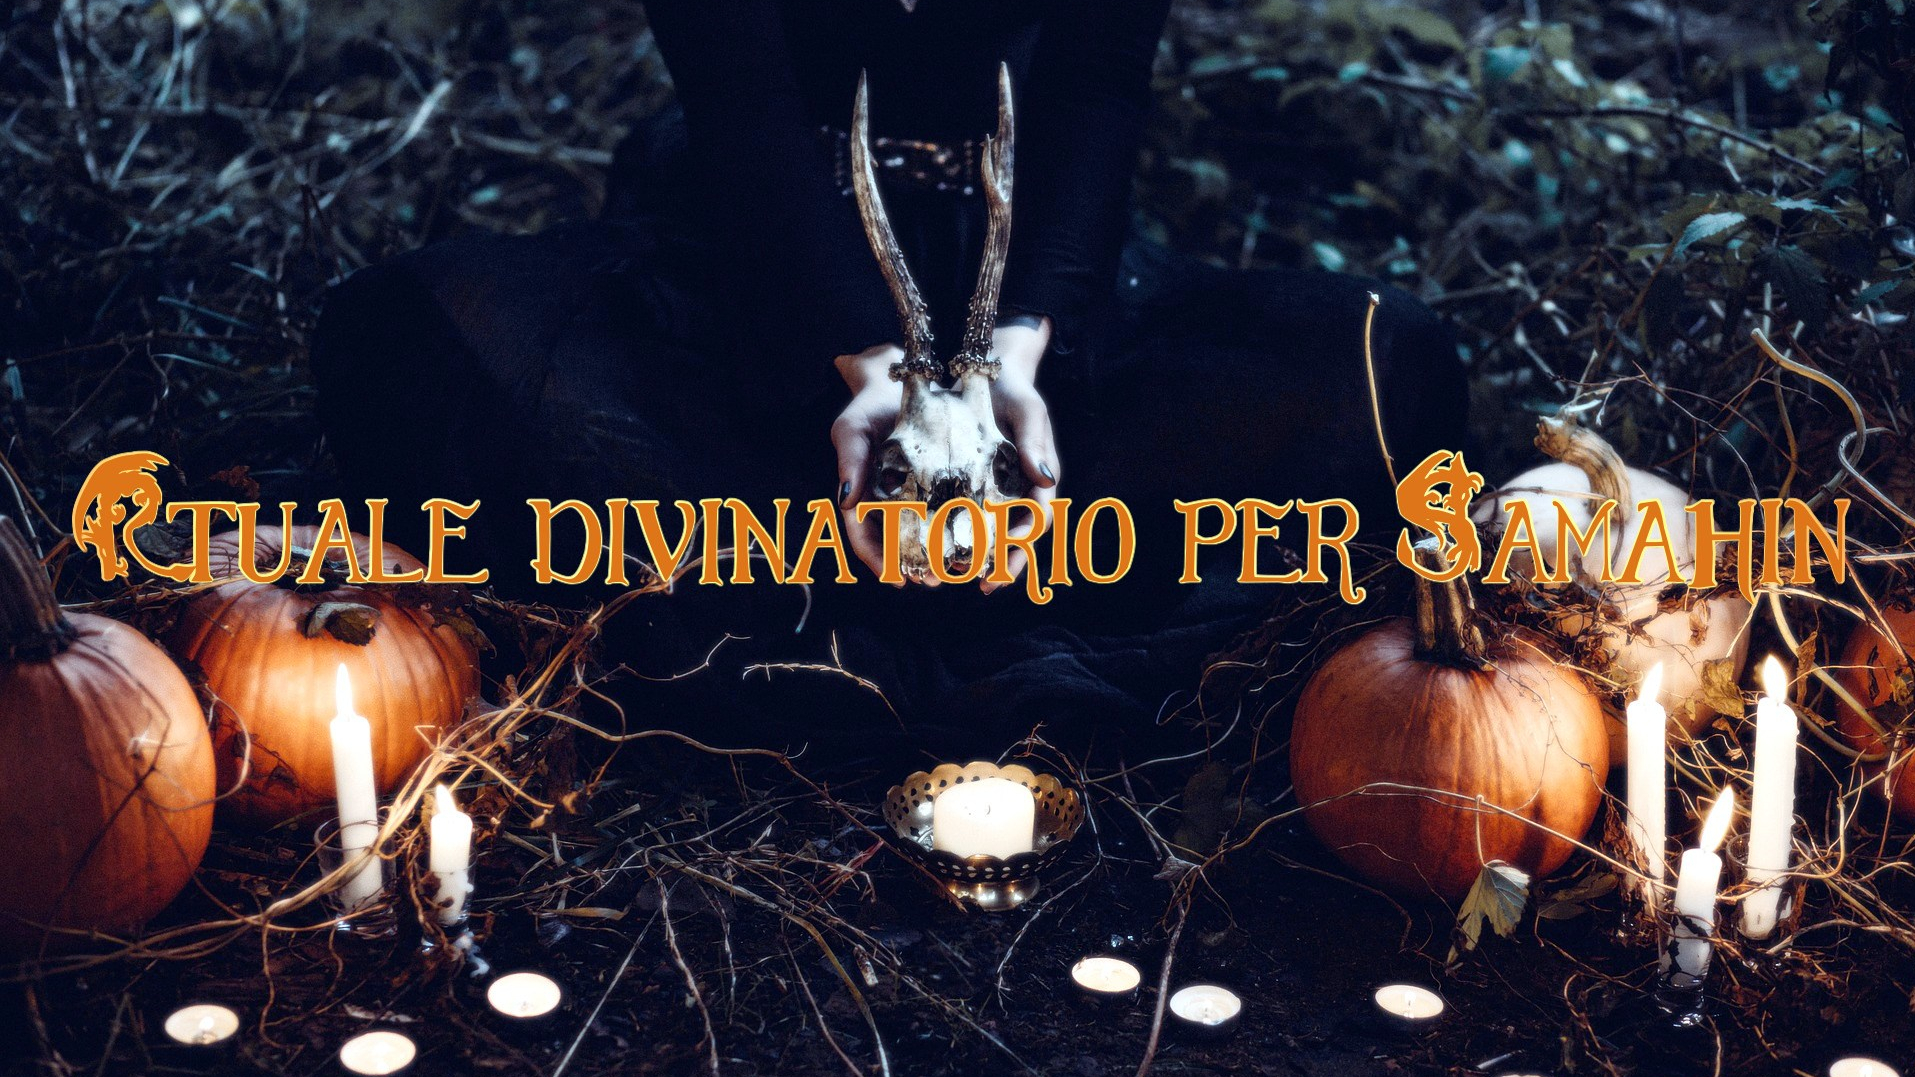 Rituale divinatorio per Samhain